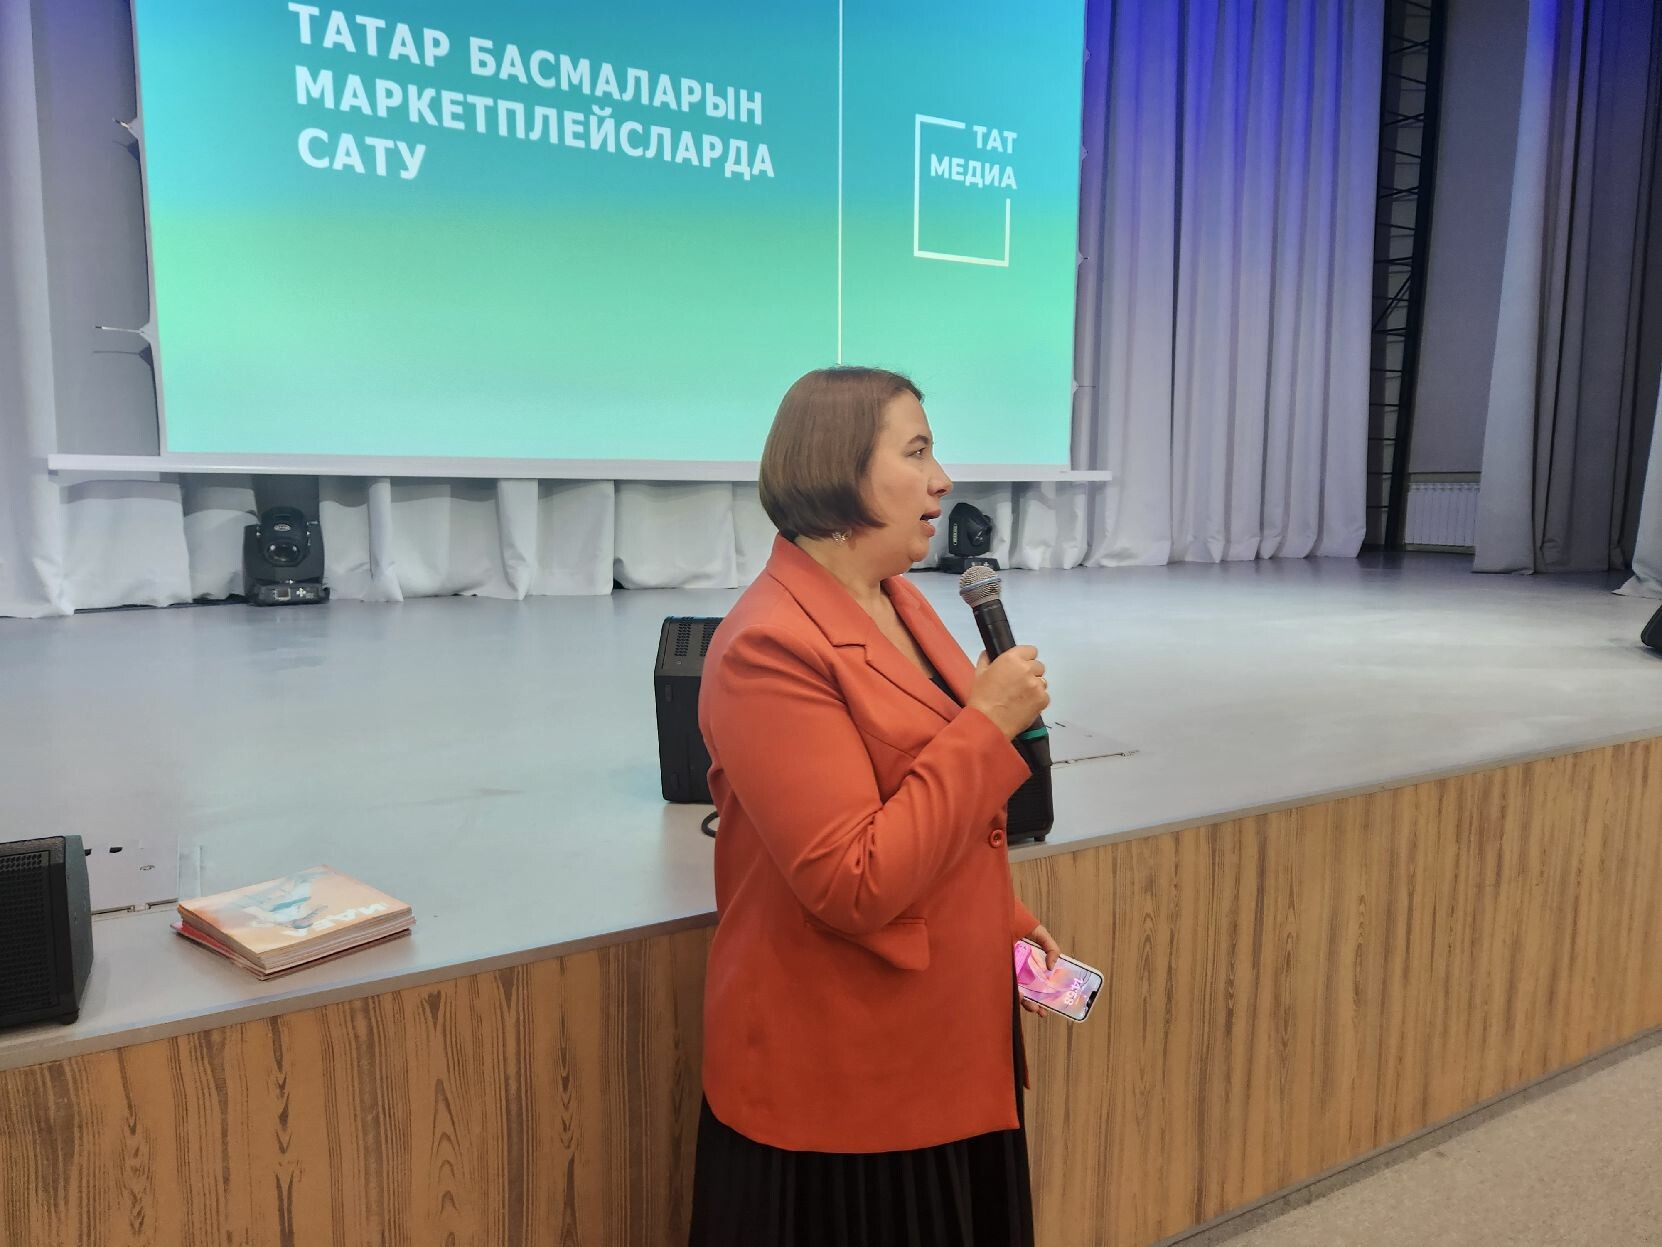 Яшел Үзәндә чит төбәкләрнең татар журналистларына акча эшләү юлларын күрсәттеләр